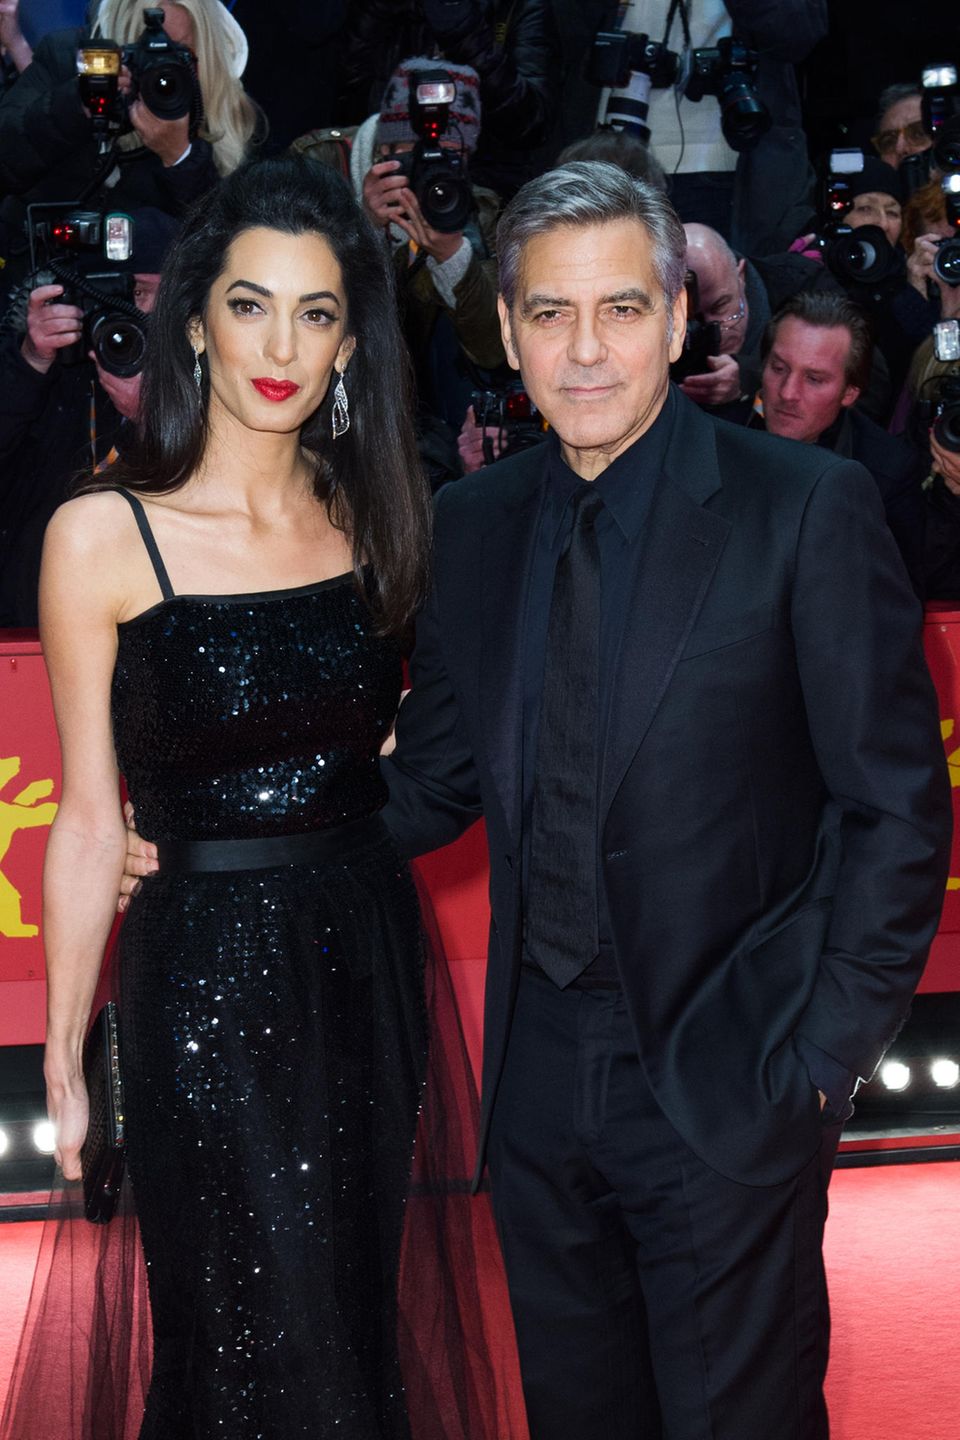 Amal Clooney ist und bleibt eine klassische Schönheit – Make-up unterstreicht diese nur. Und zwar genau so: Ihre vollen dunklen Haare hat die Anwältin zum Half-Updo gestylt, rote Lippen und ein mitternachtsschwarzer Lidstrich sorgen für nobles Drama auf dem roten Teppich in Berlin.